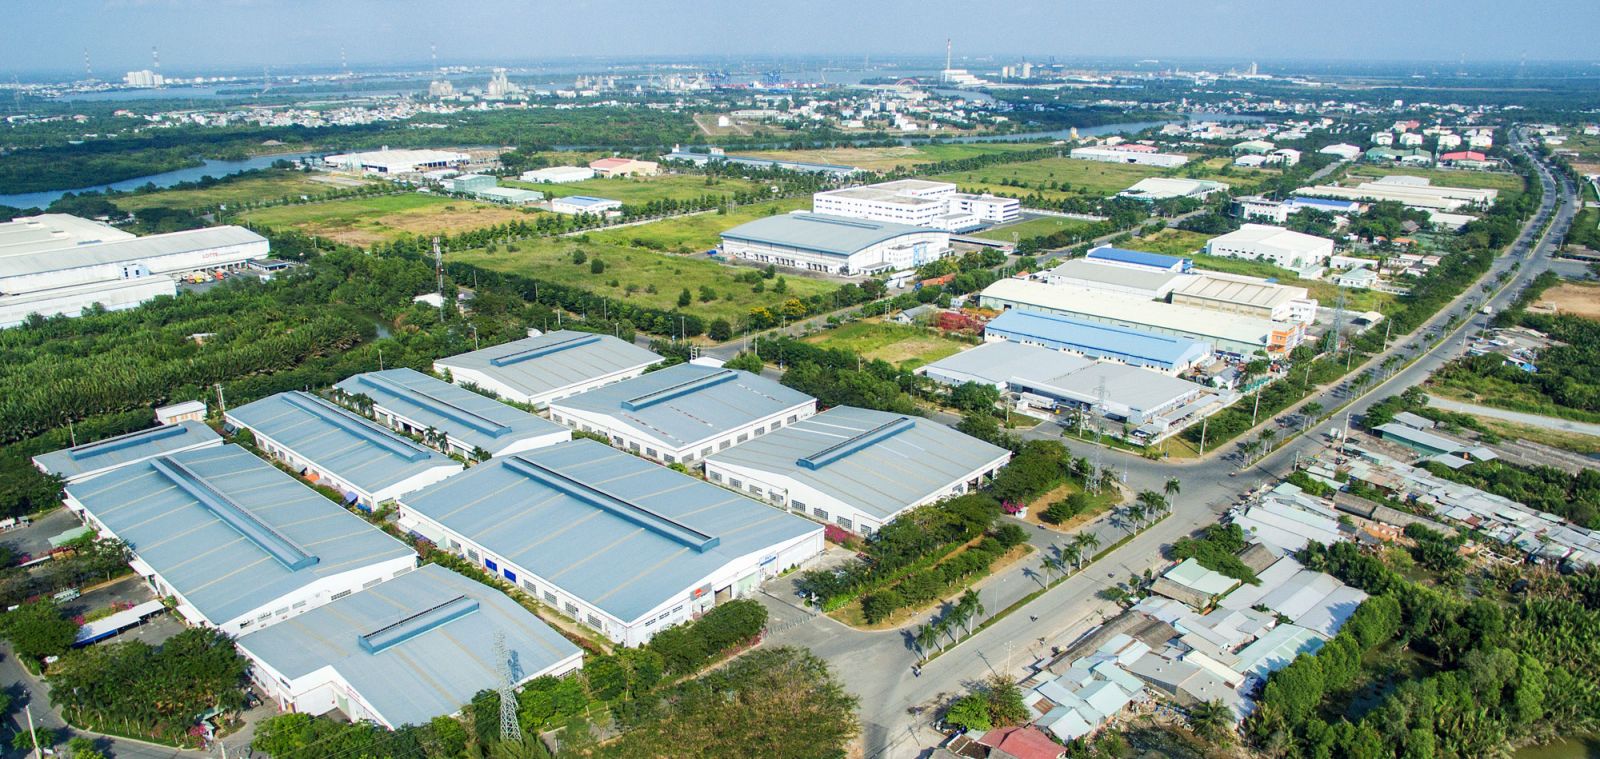 Bất động sản công nghiệp Việt Nam có sự tăng trưởng và phát triển tương đối khả quan. (Ảnh minh hoạ)